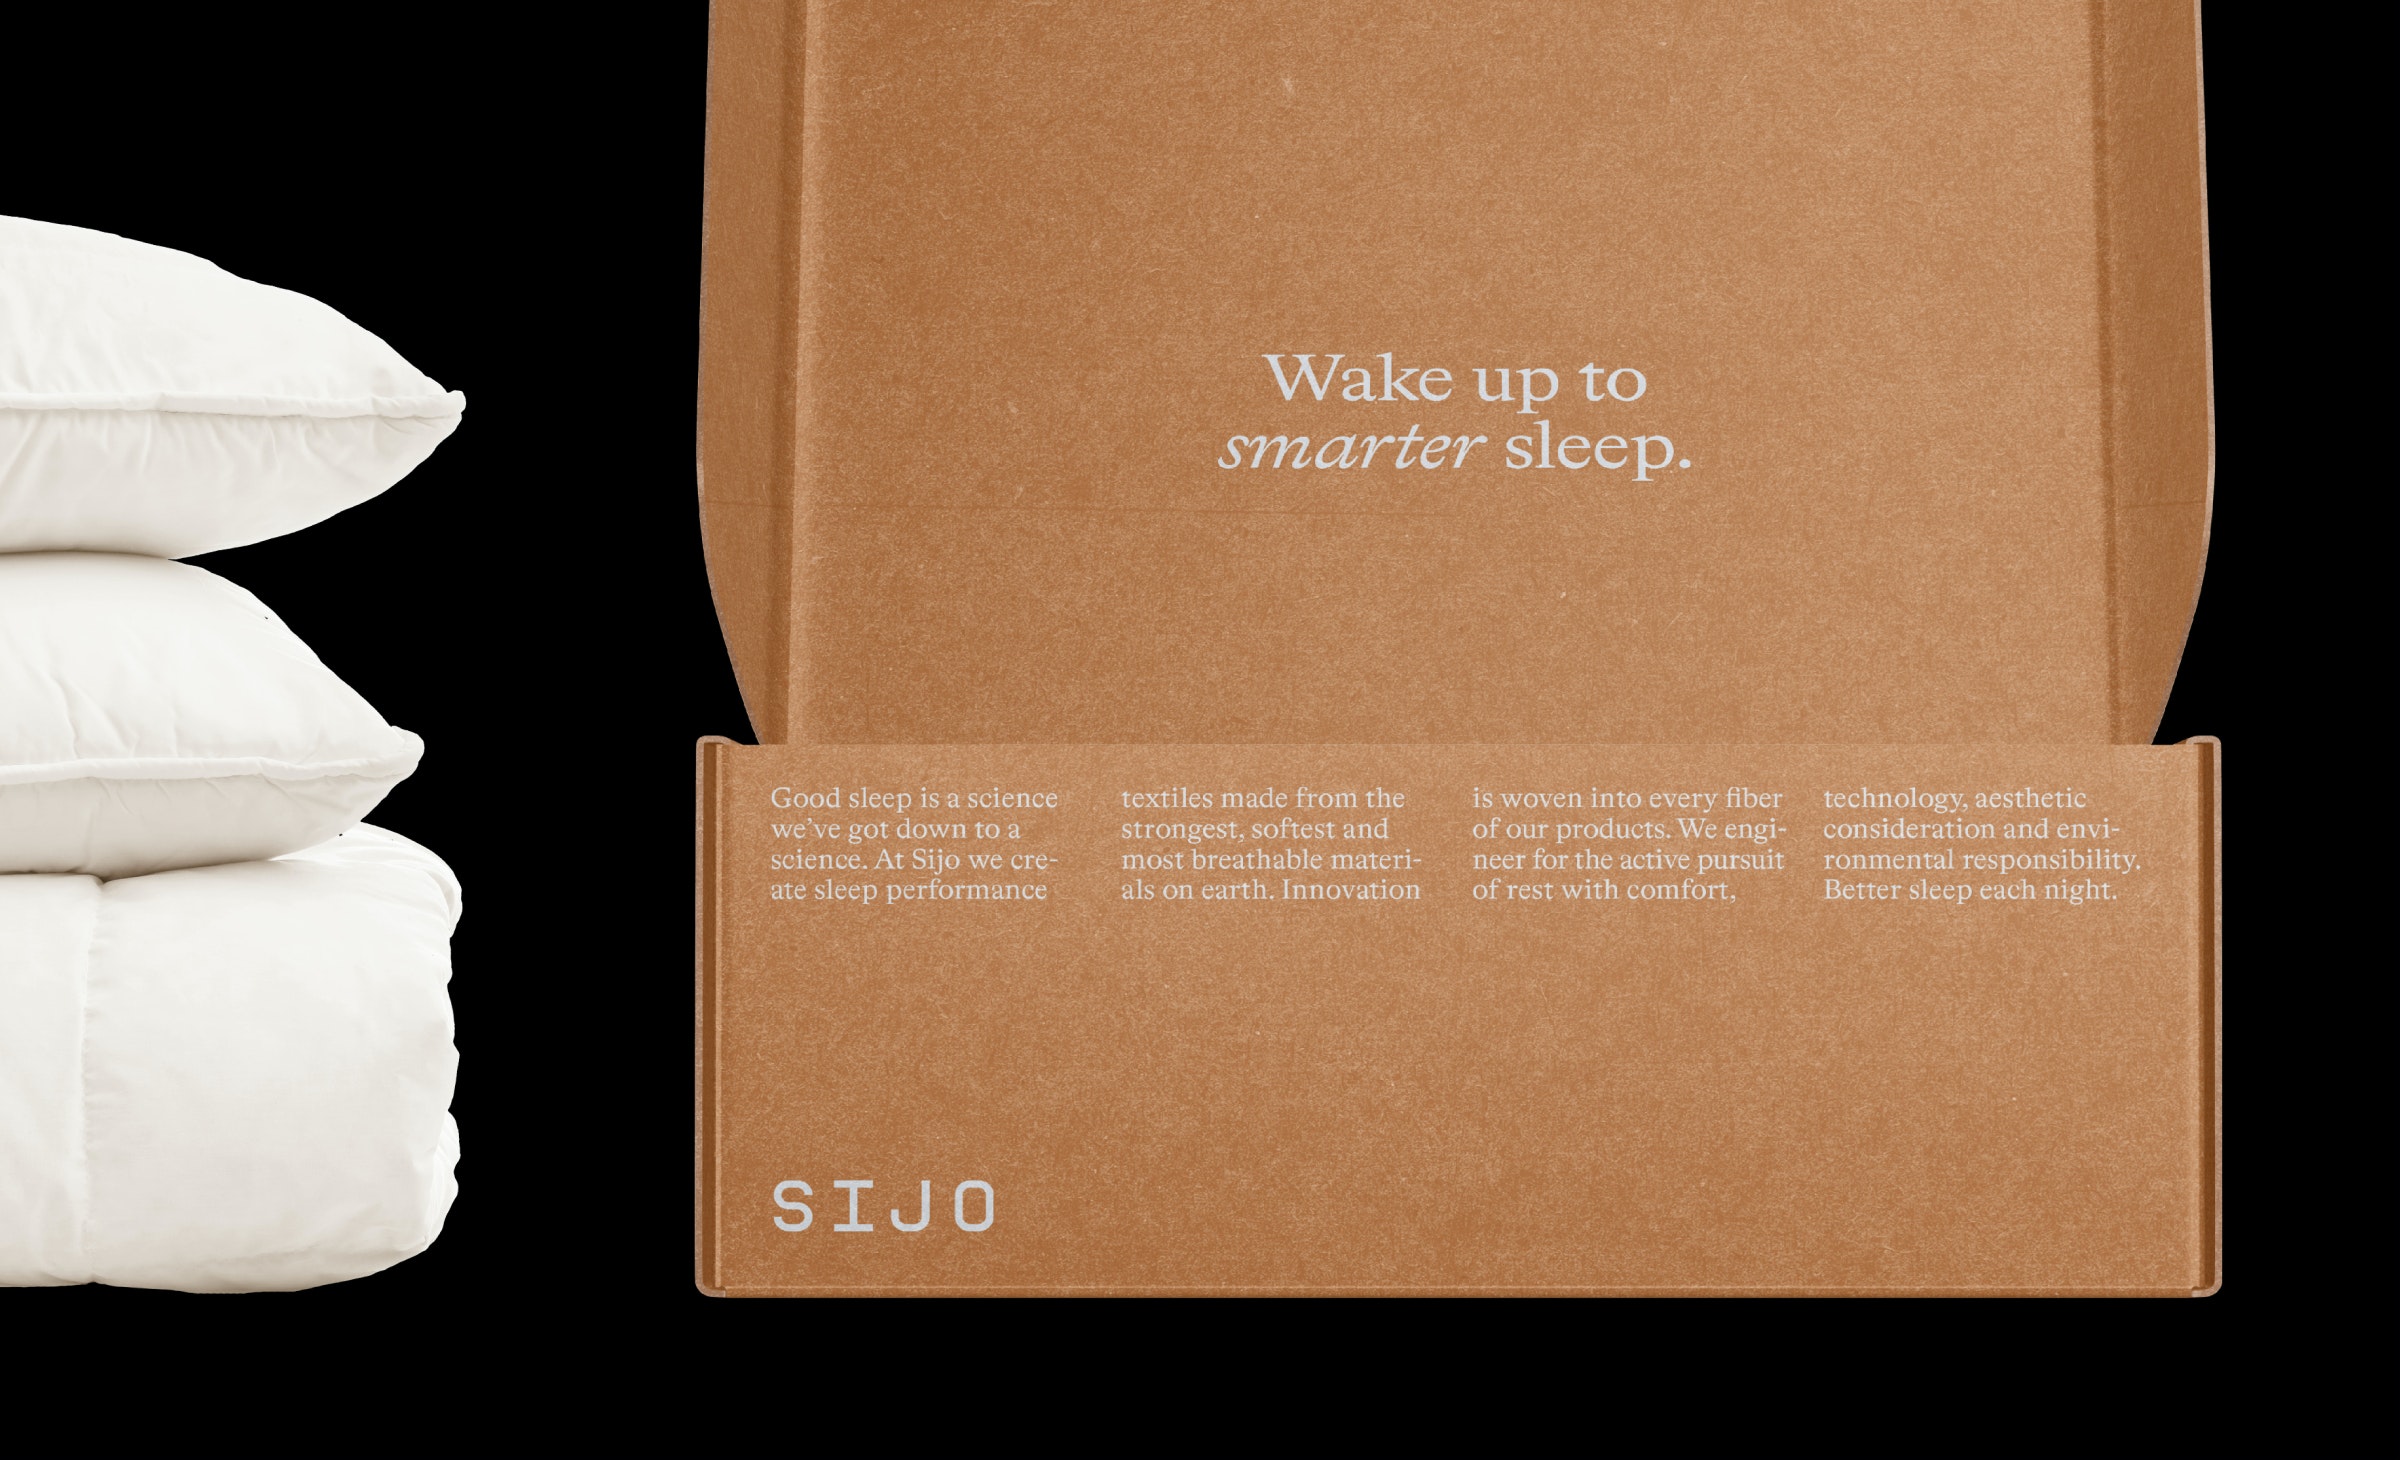 床上用品和睡衣品牌Sijo视觉形象设计